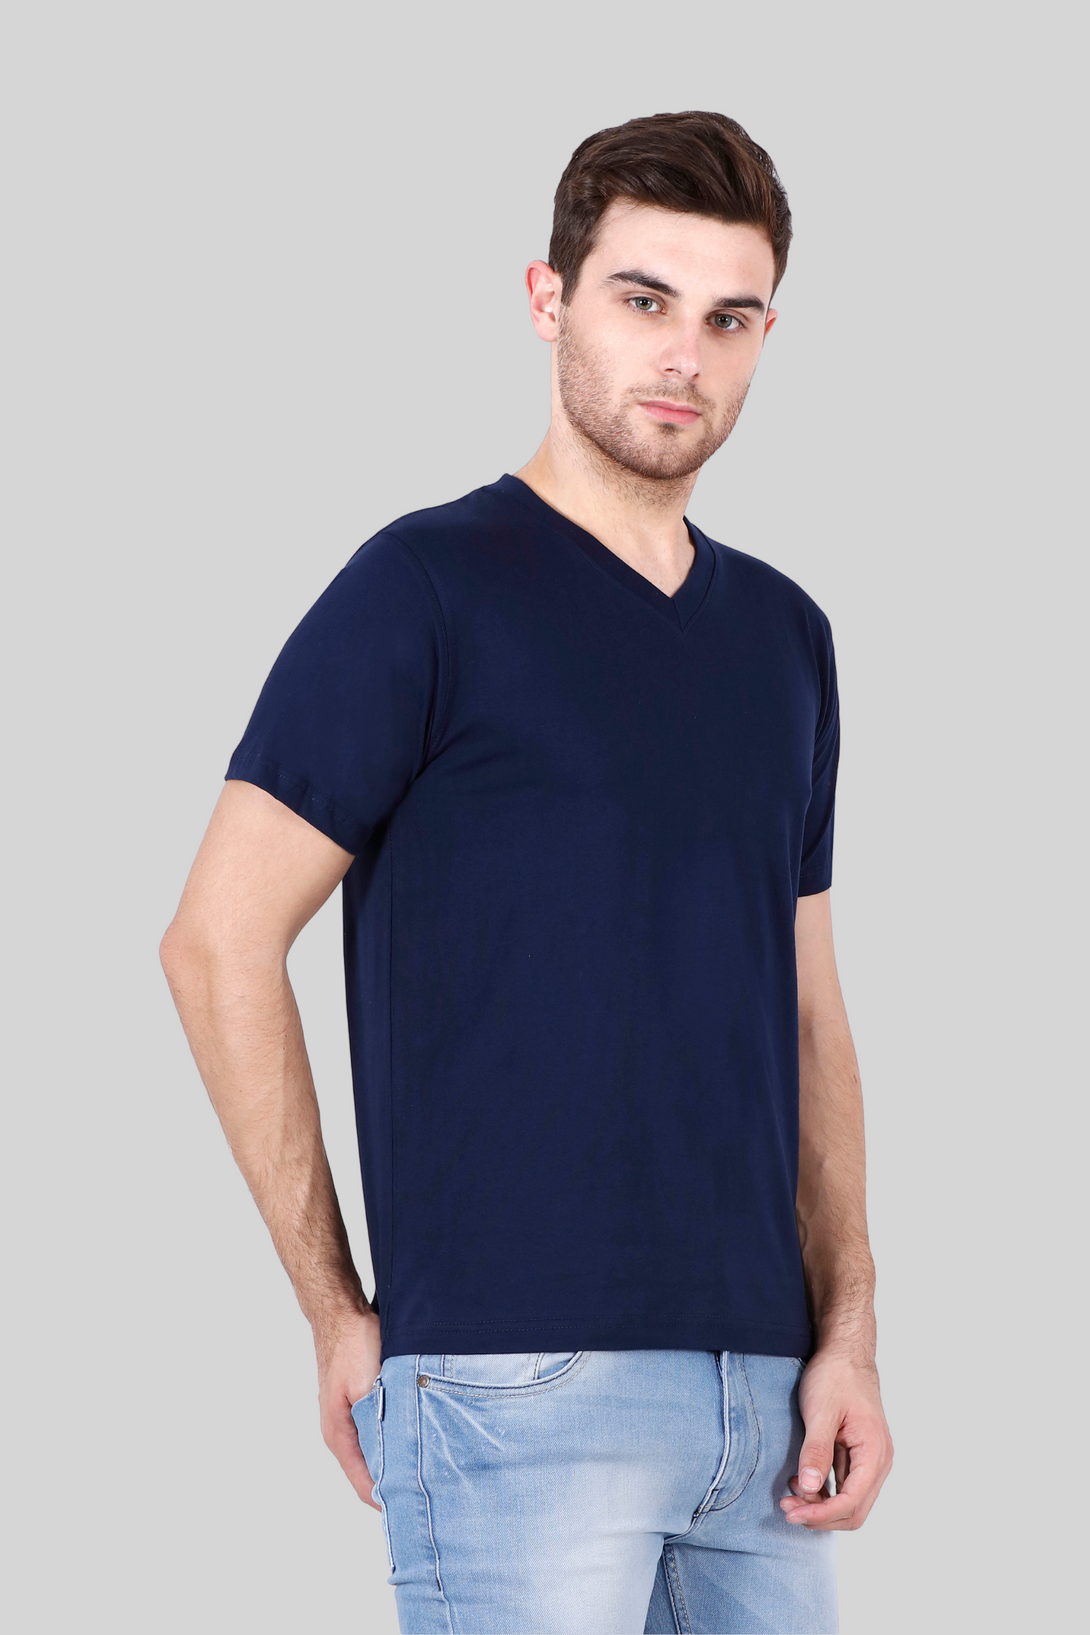 Navy Blue V Neck T-Shirt For Men - WowWaves - 7